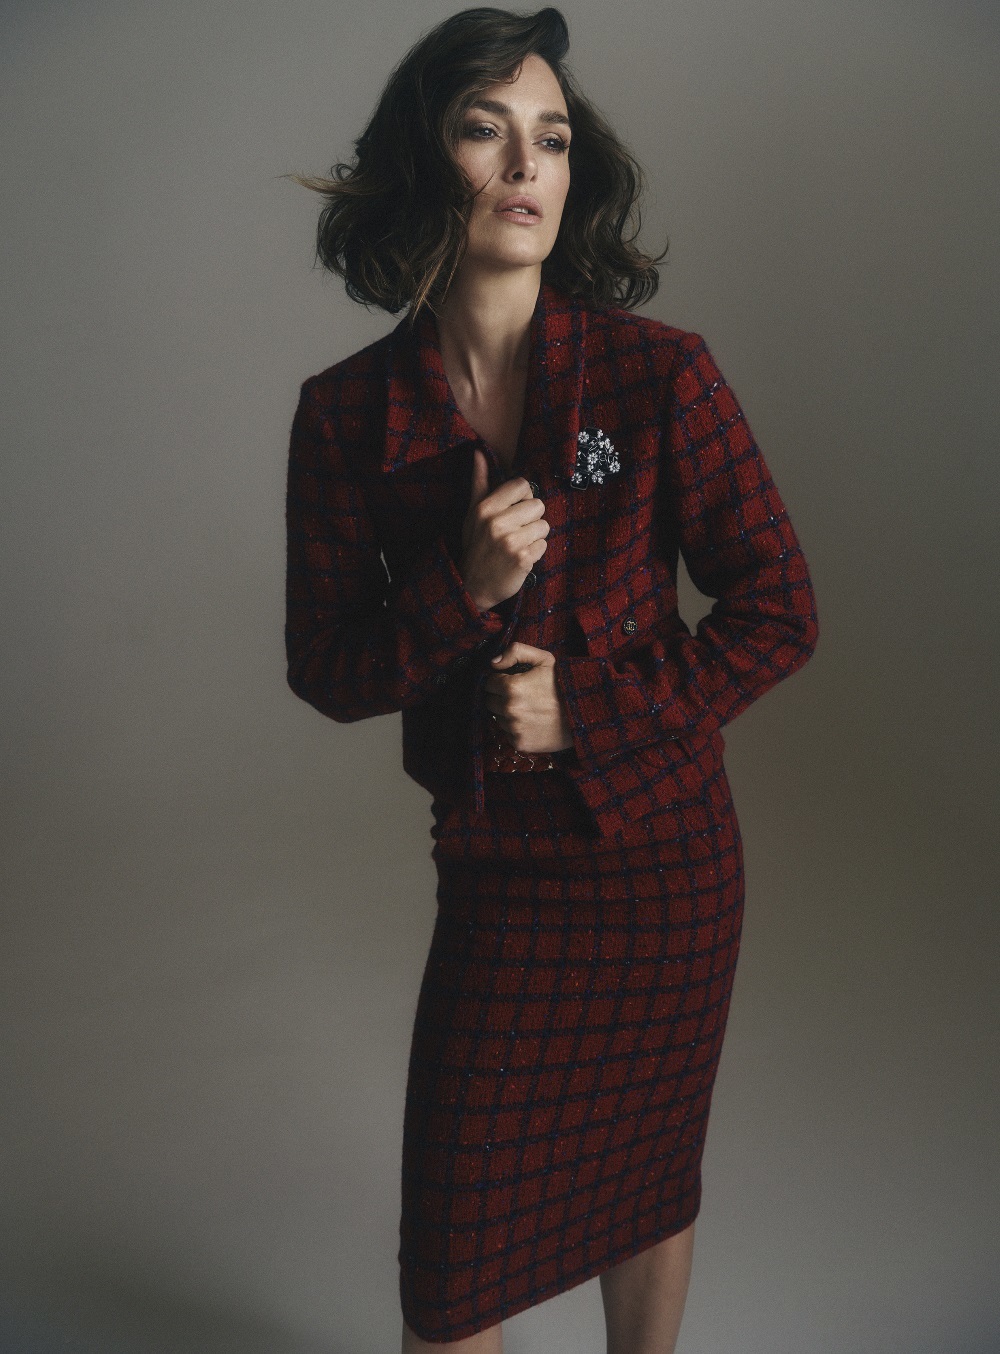 Keira Knightley con traje de chaqueta de tweed de lana rojo y azul con broche en metal y resina, Chanel.